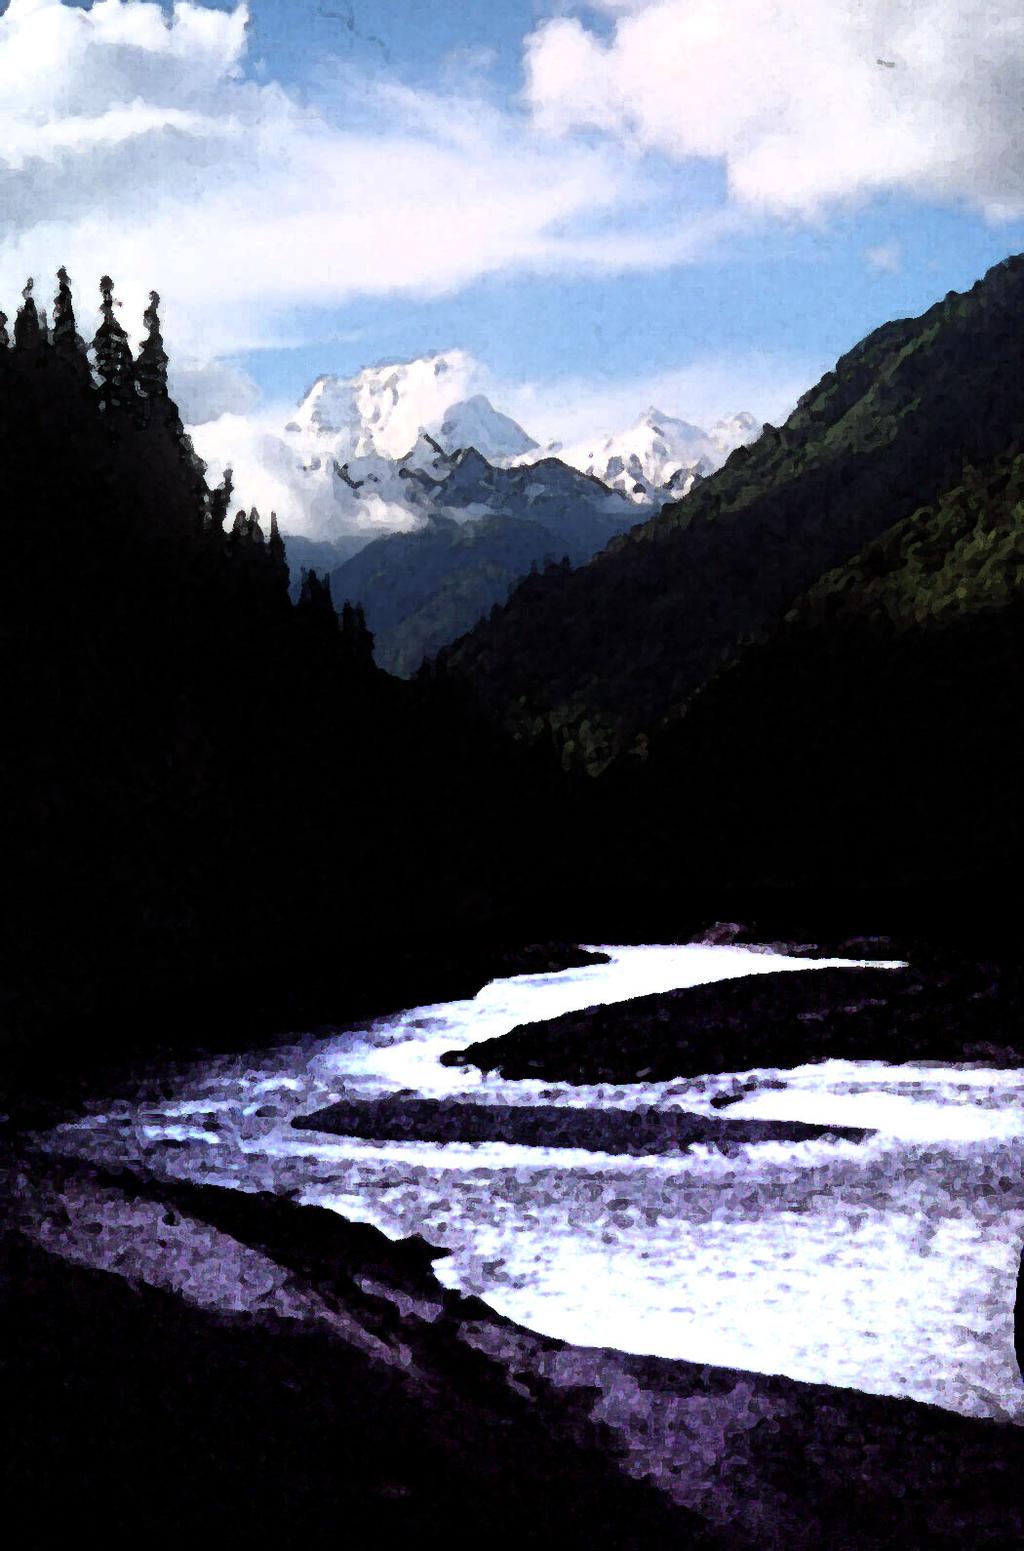 Mountain Rivers Gutta cavat lapidem (Dripping water hollows